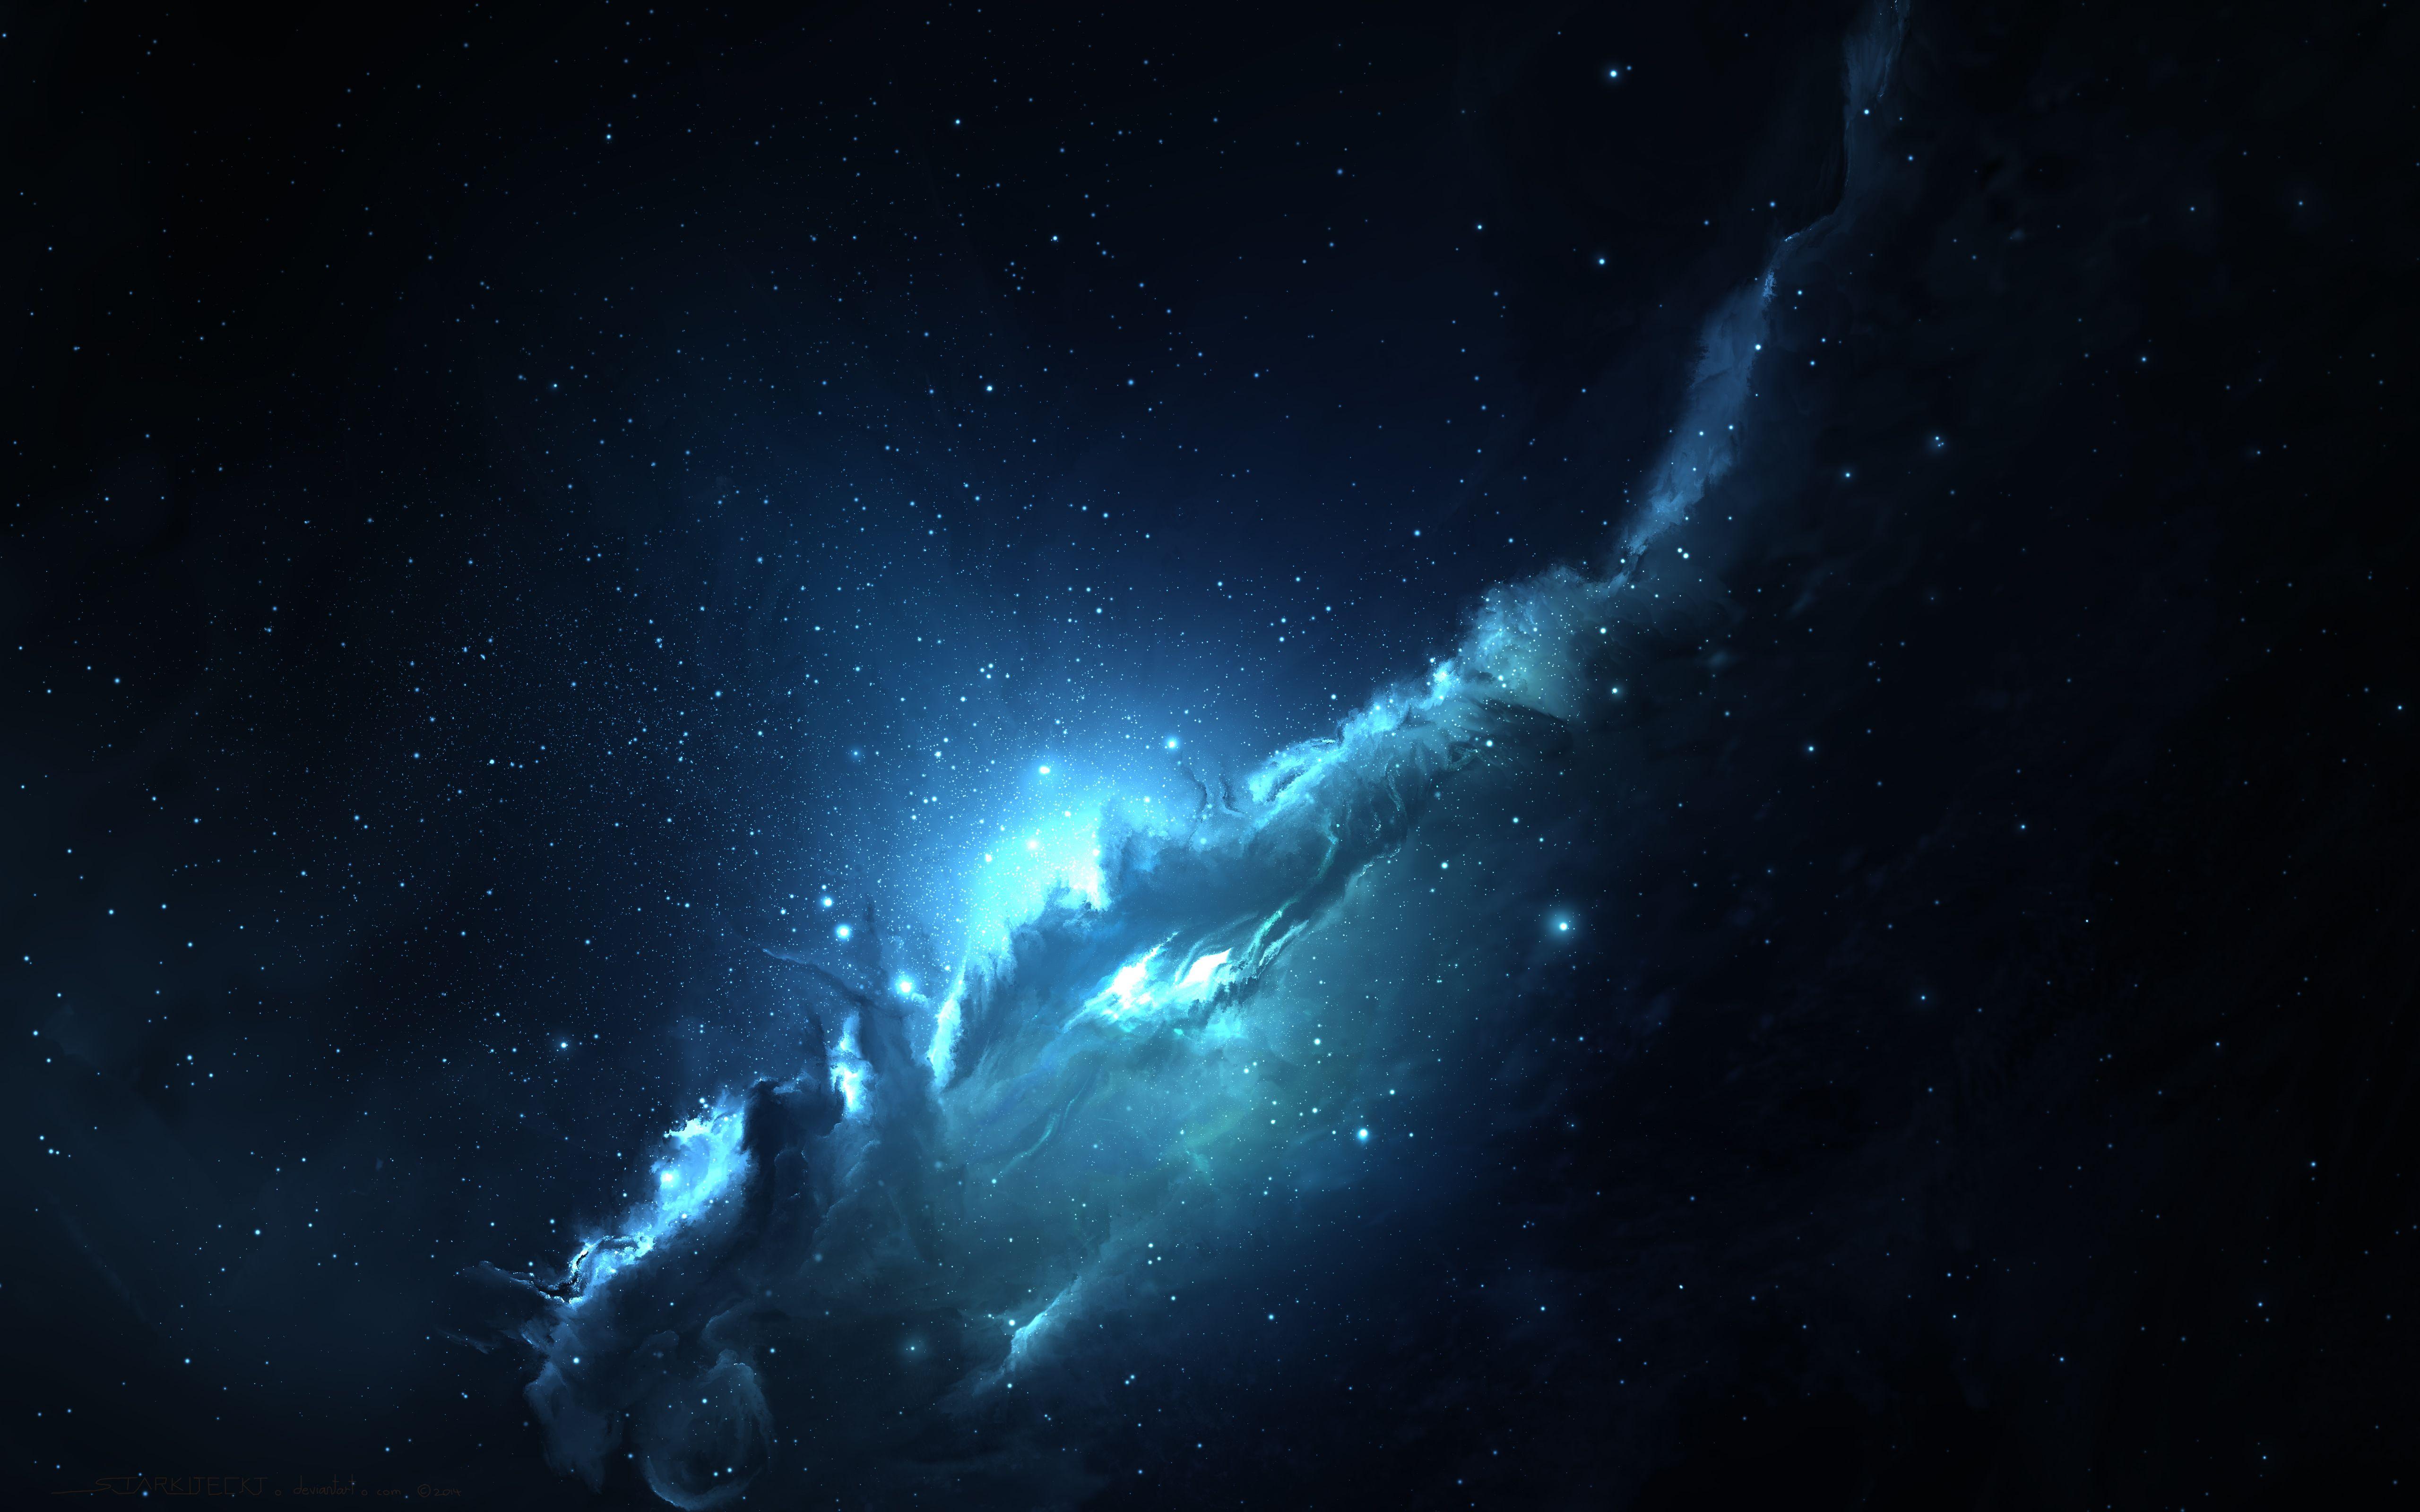 Nebula HD Wallpaper and Background Image